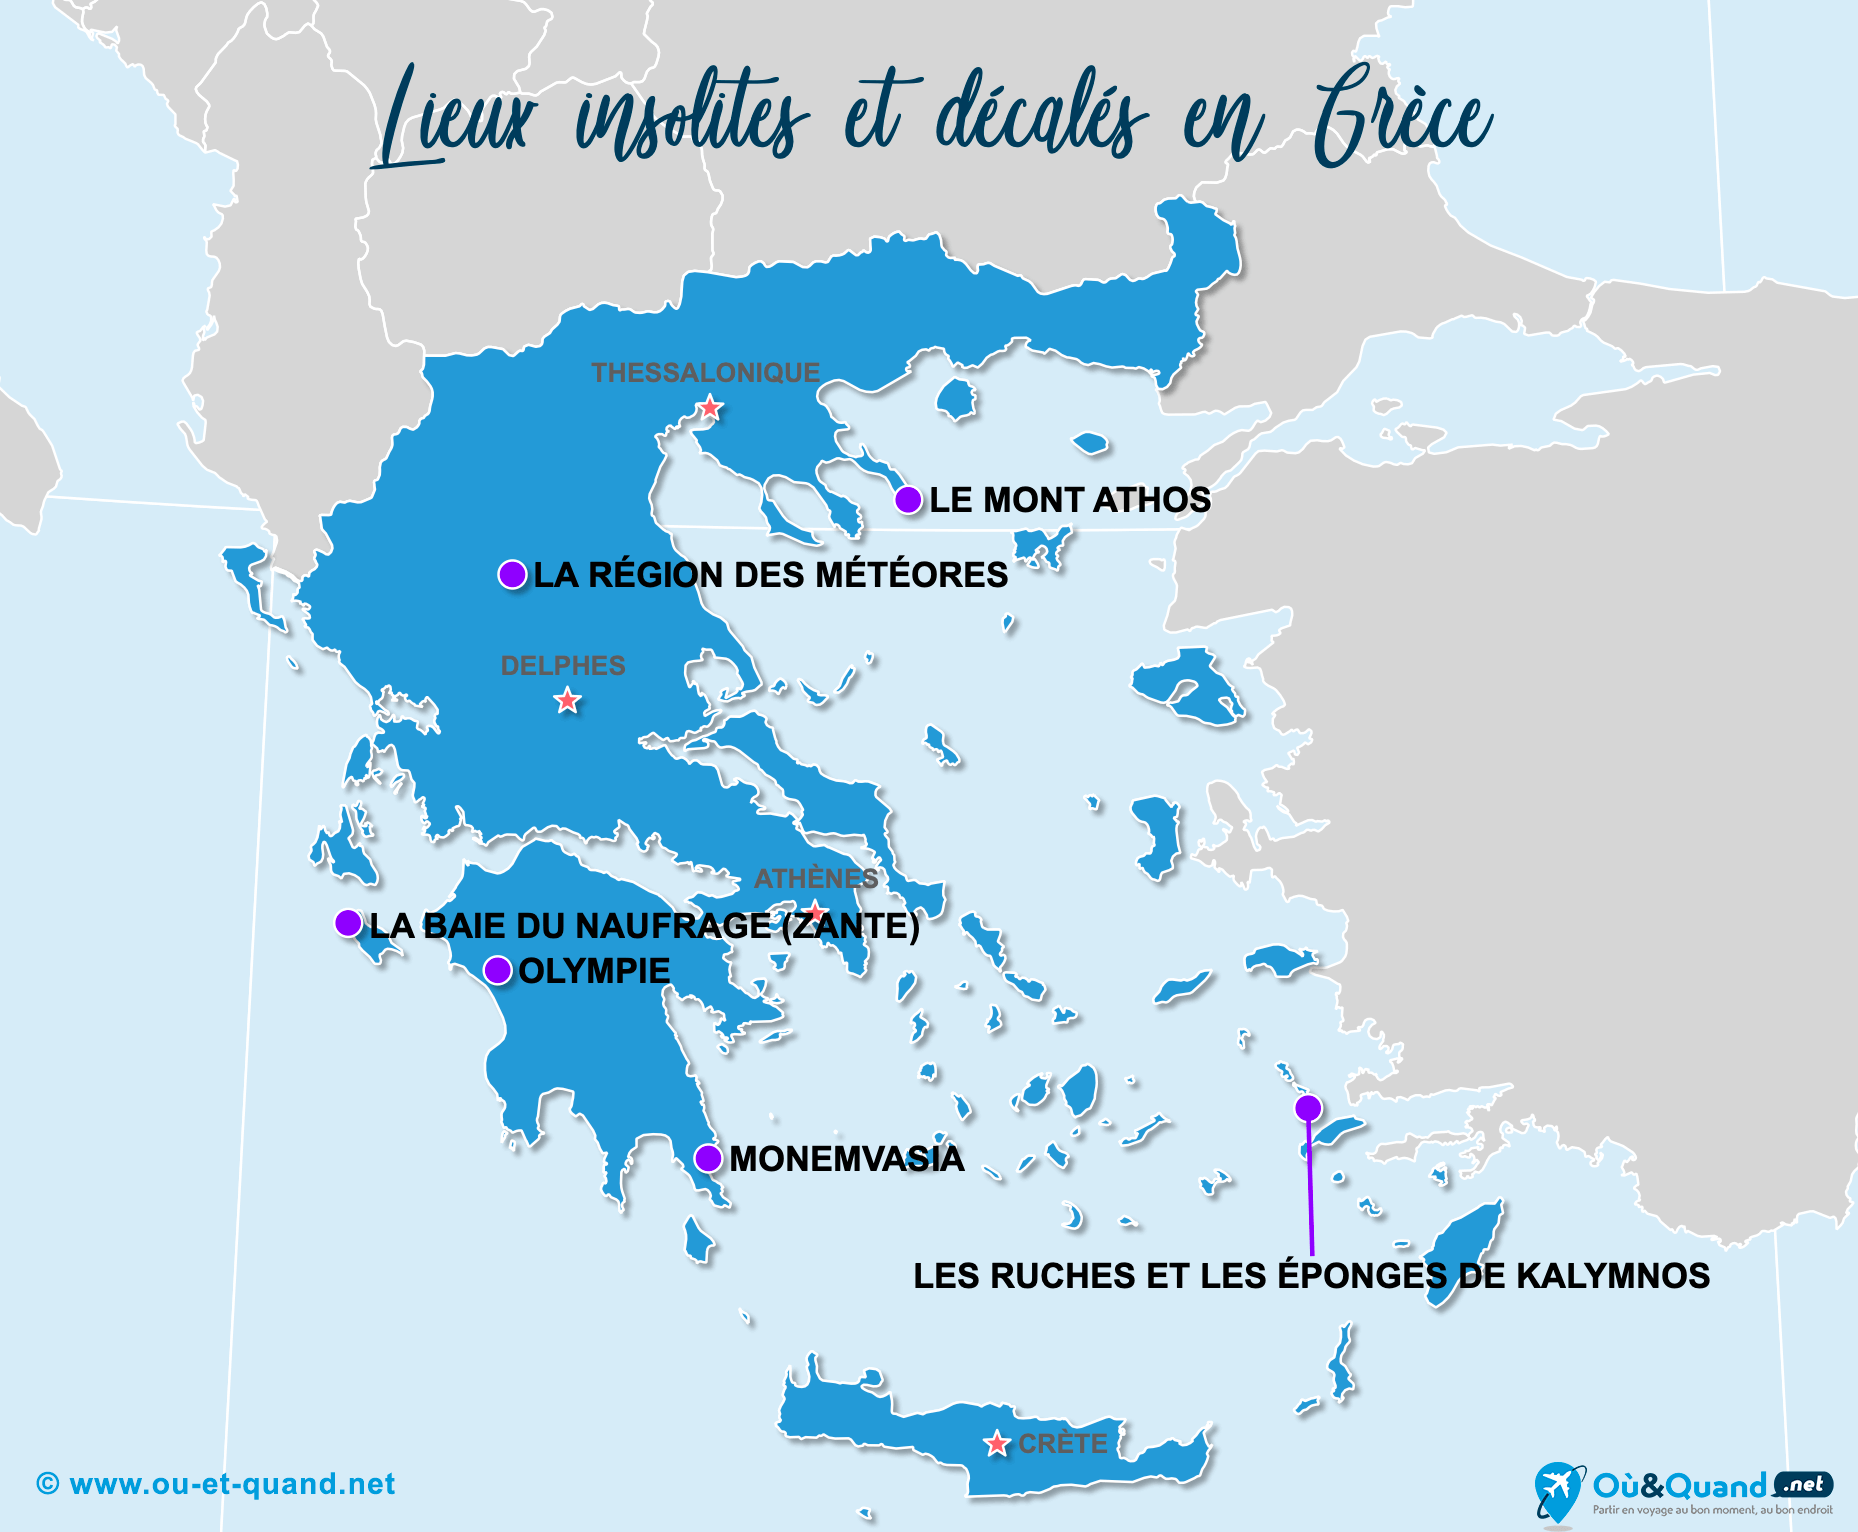 La carte des lieux insolites en Grèce